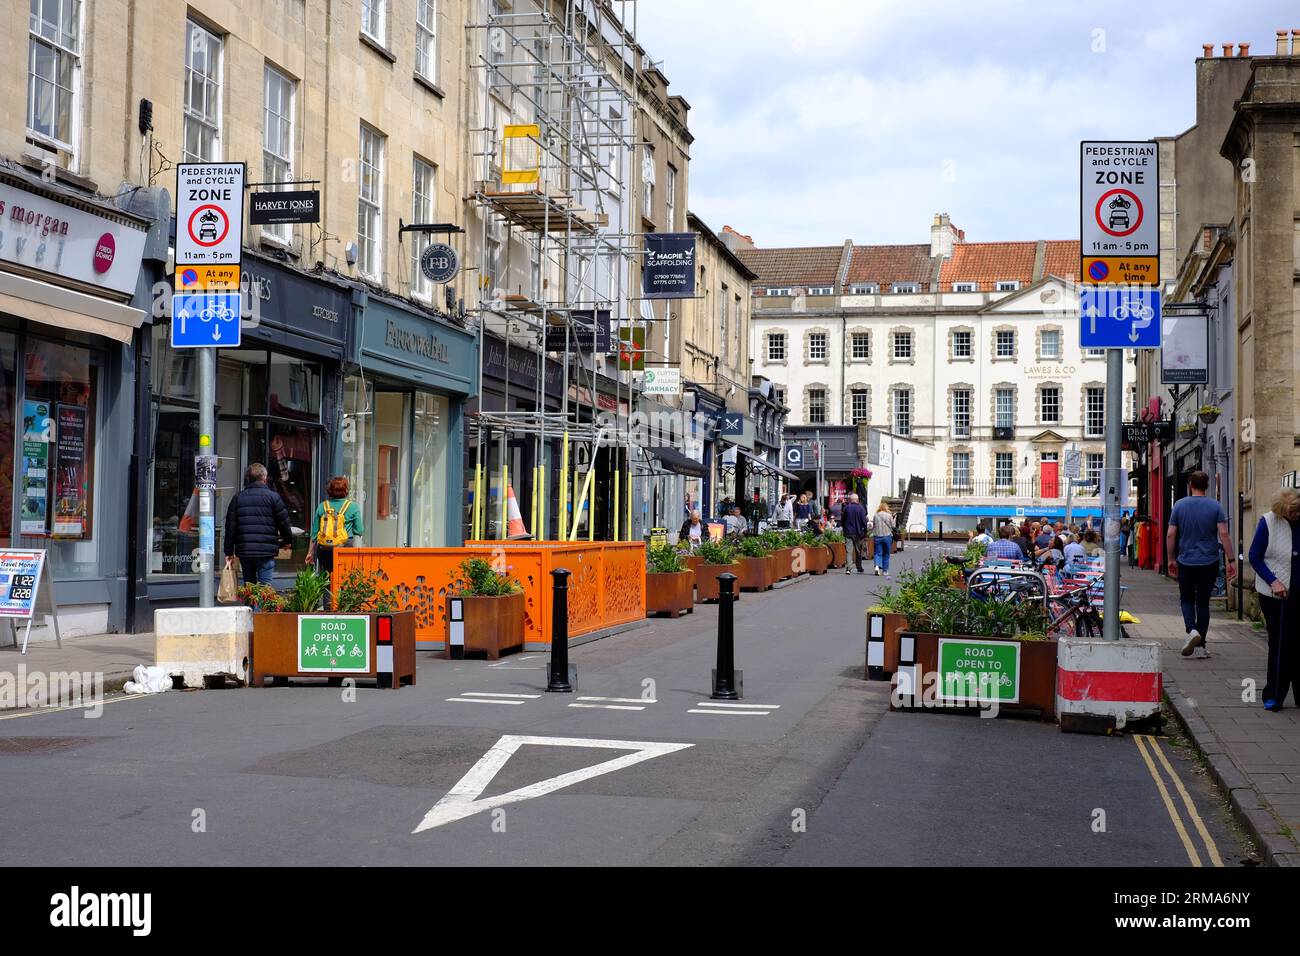 Strada chiusa ai veicoli a motore per creare un quartiere vivibile a basso traffico nel villaggio di Clifton, Bristol, Regno Unito Foto Stock